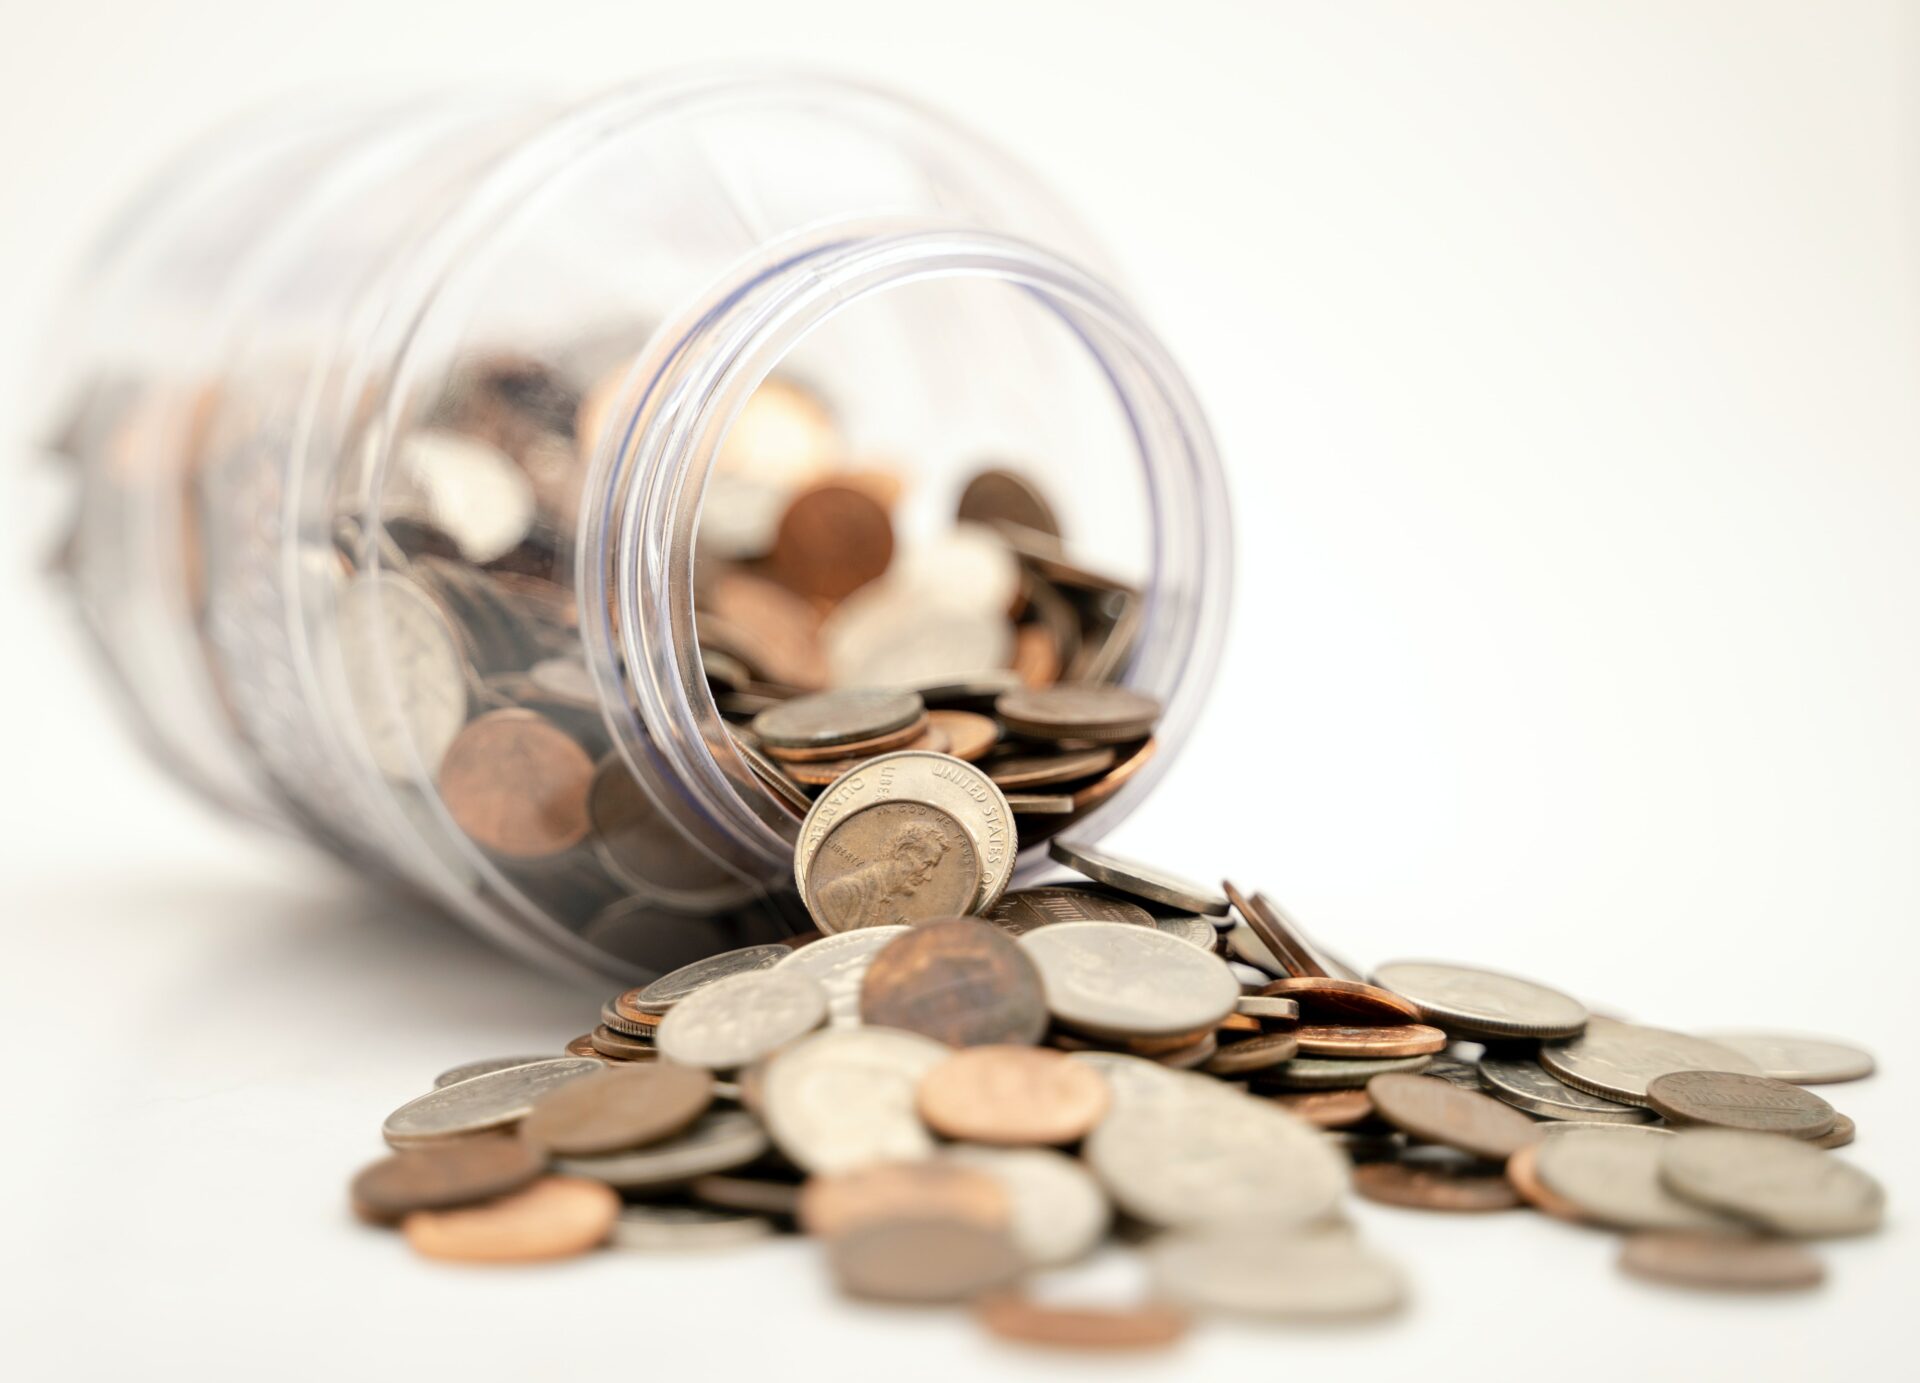 Zväz obchodu prosí spotrebiteľov, aby nenosili veľké objemy drobných mincí do predajní